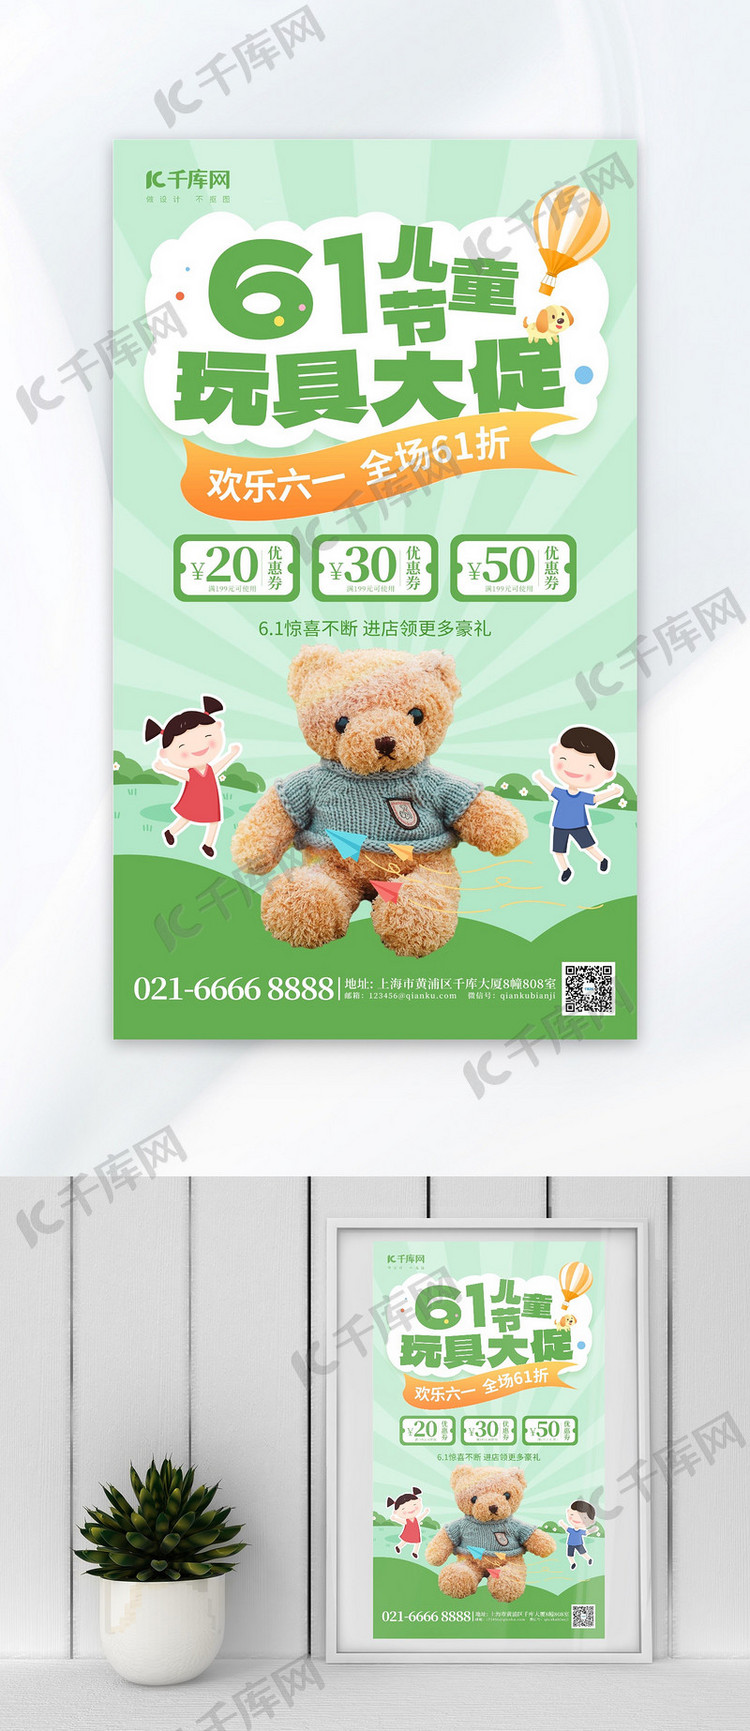 61儿童节玩具促销绿色创意海报